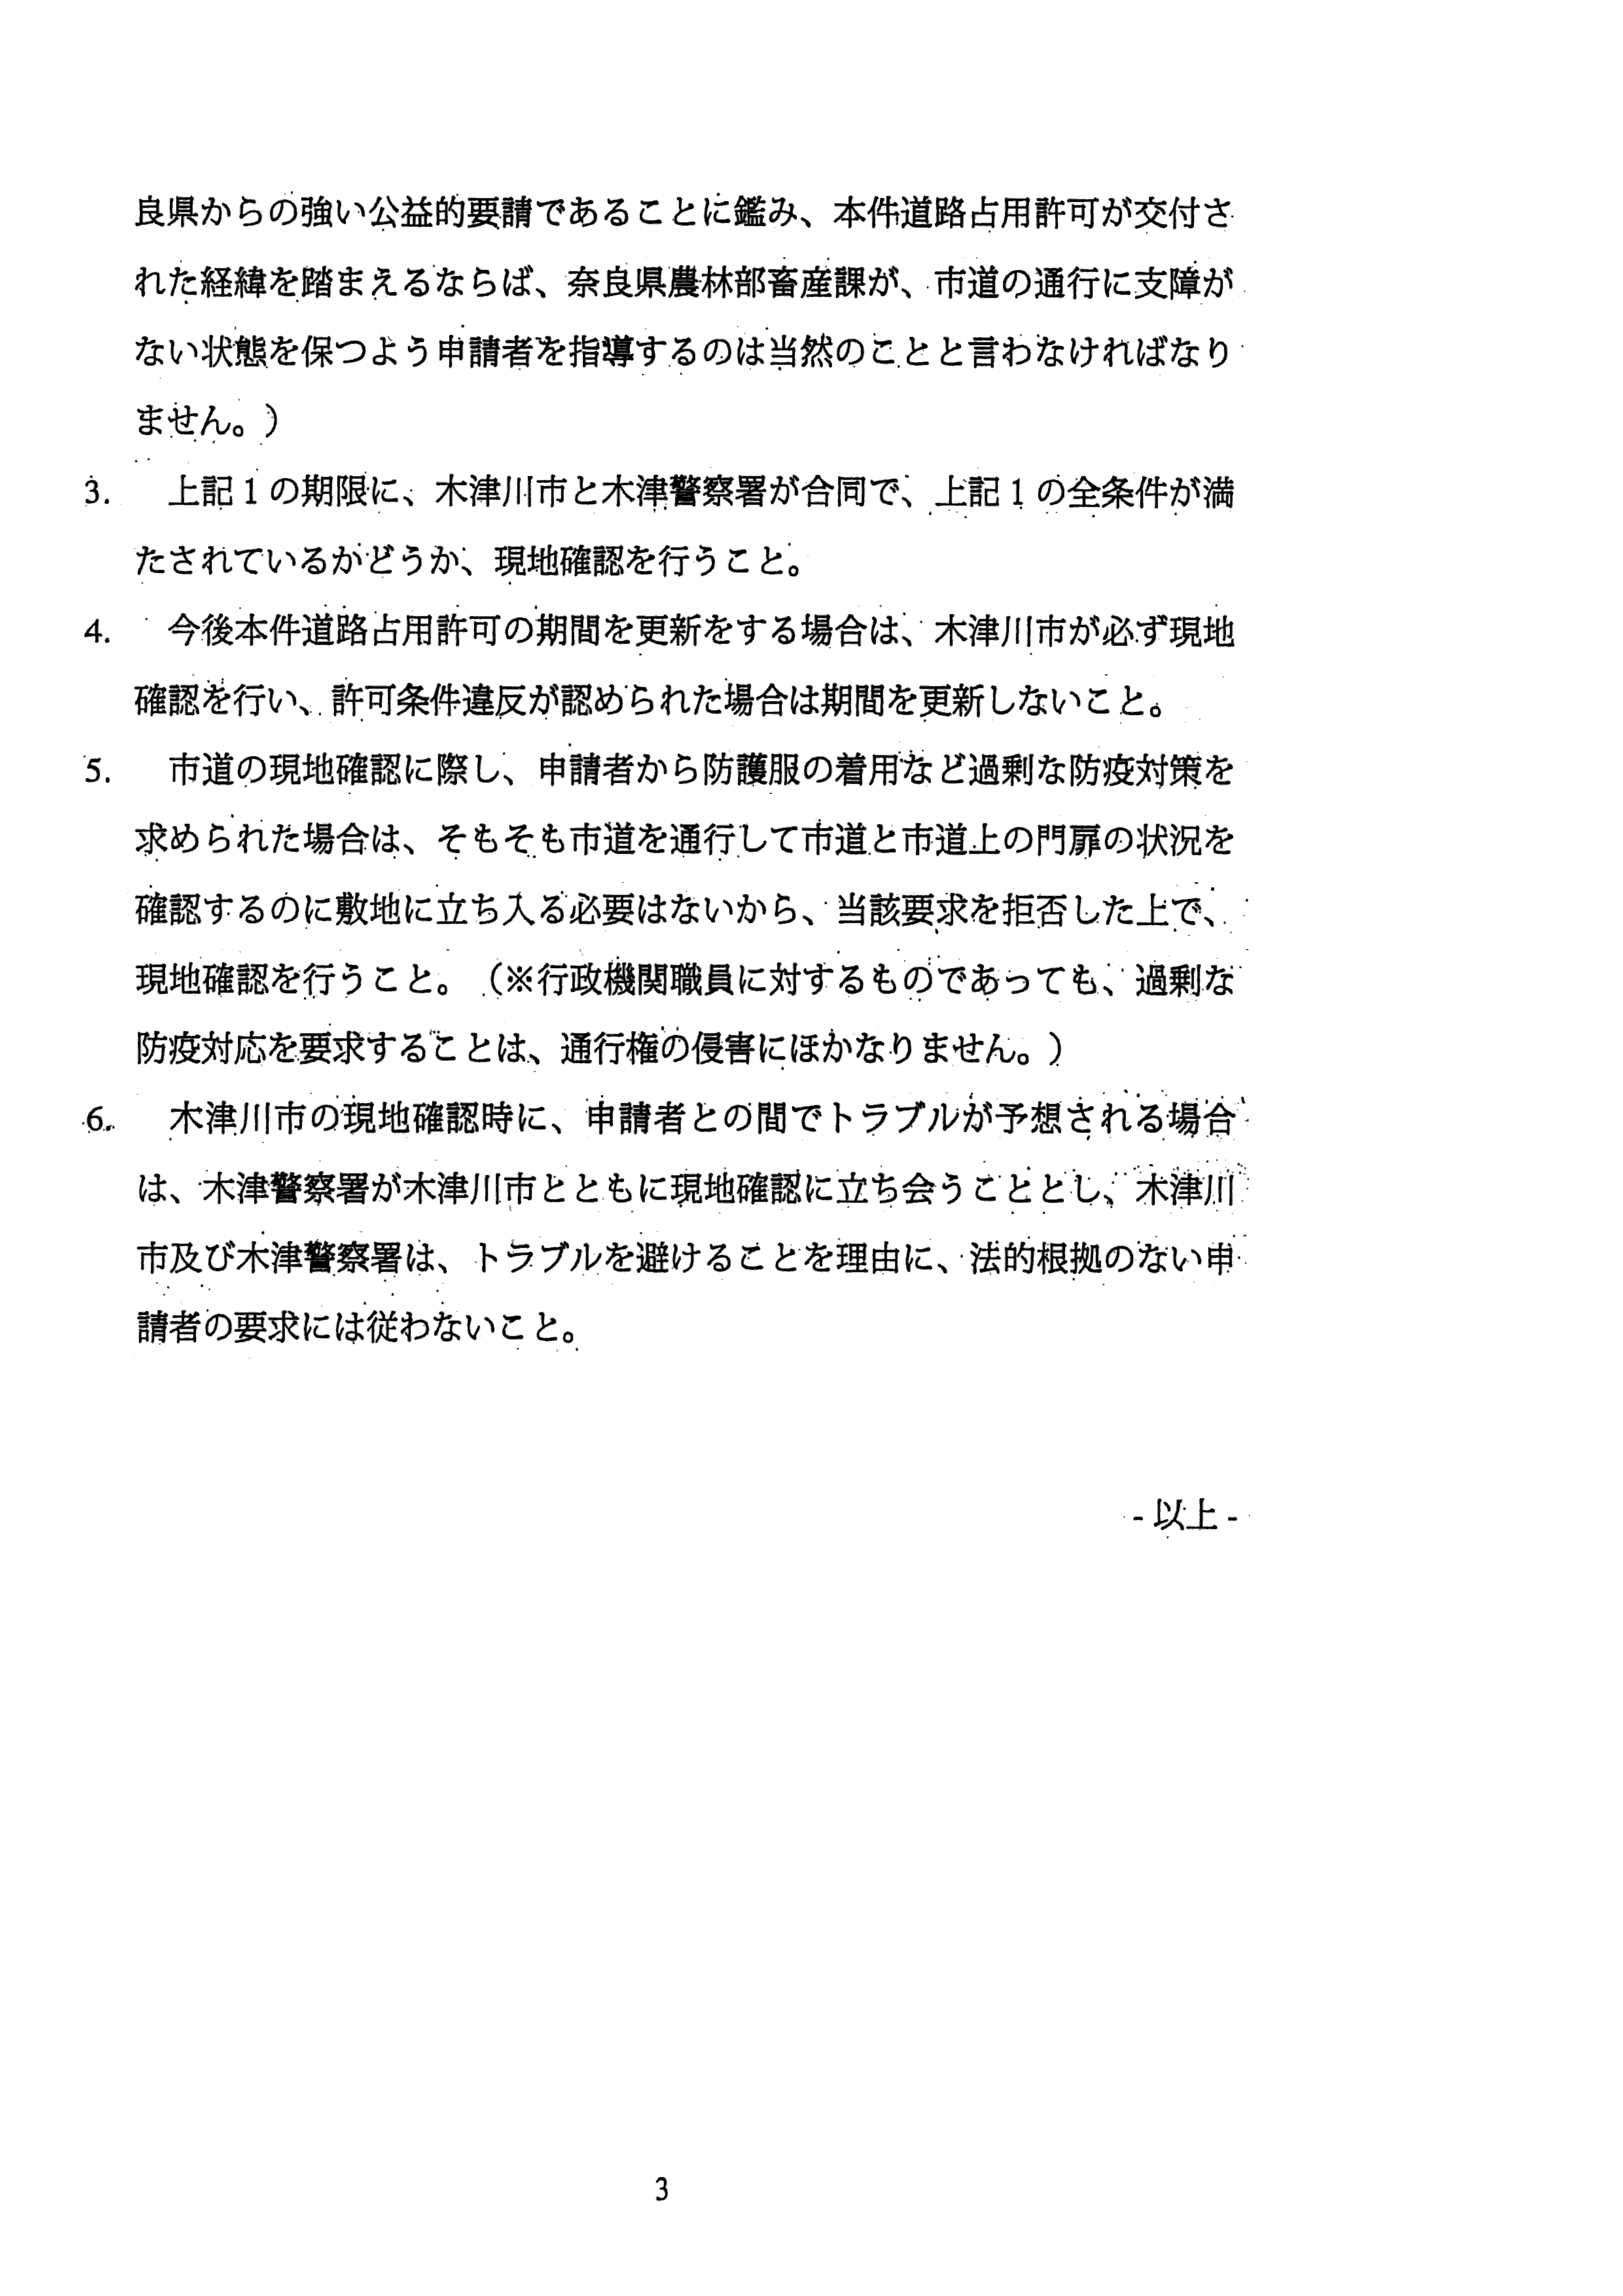 令和3年9月30日（村田養豚場）感染確認区域の拡大に伴う対応策について-奈良県との協議-07